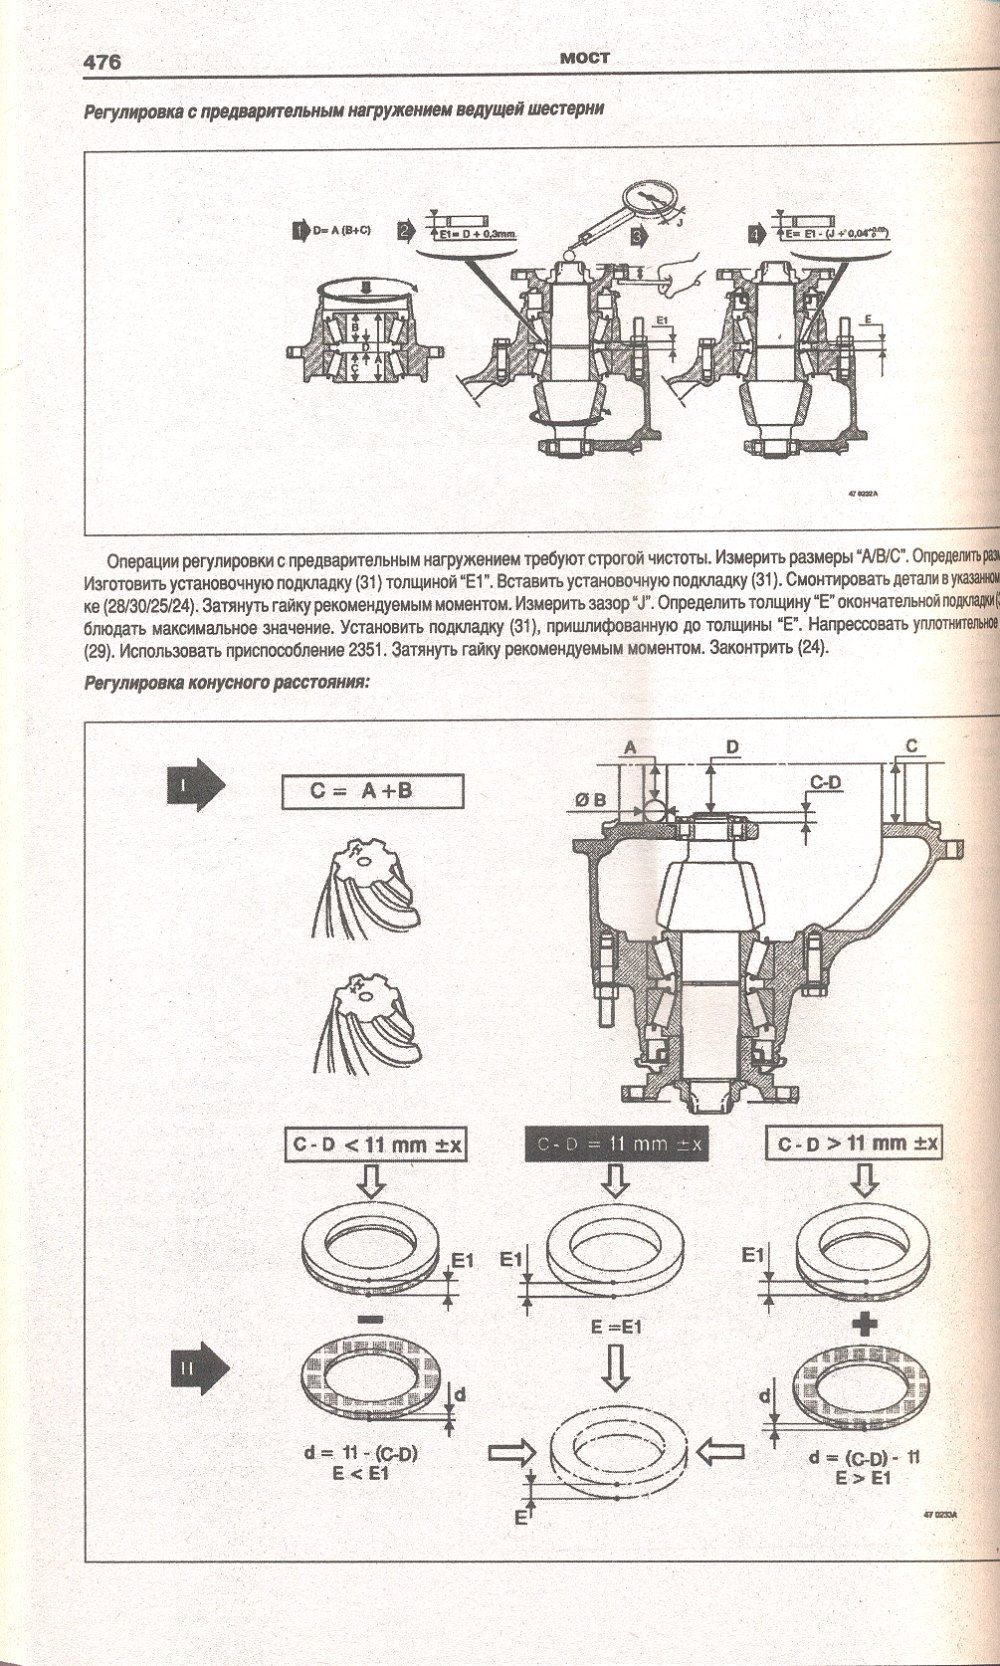 Книга Renault Magnum 1990-2006 дизель, электросхемы. Руководство по ремонту и эксплуатации грузового автомобиля. Атласы автомобилей